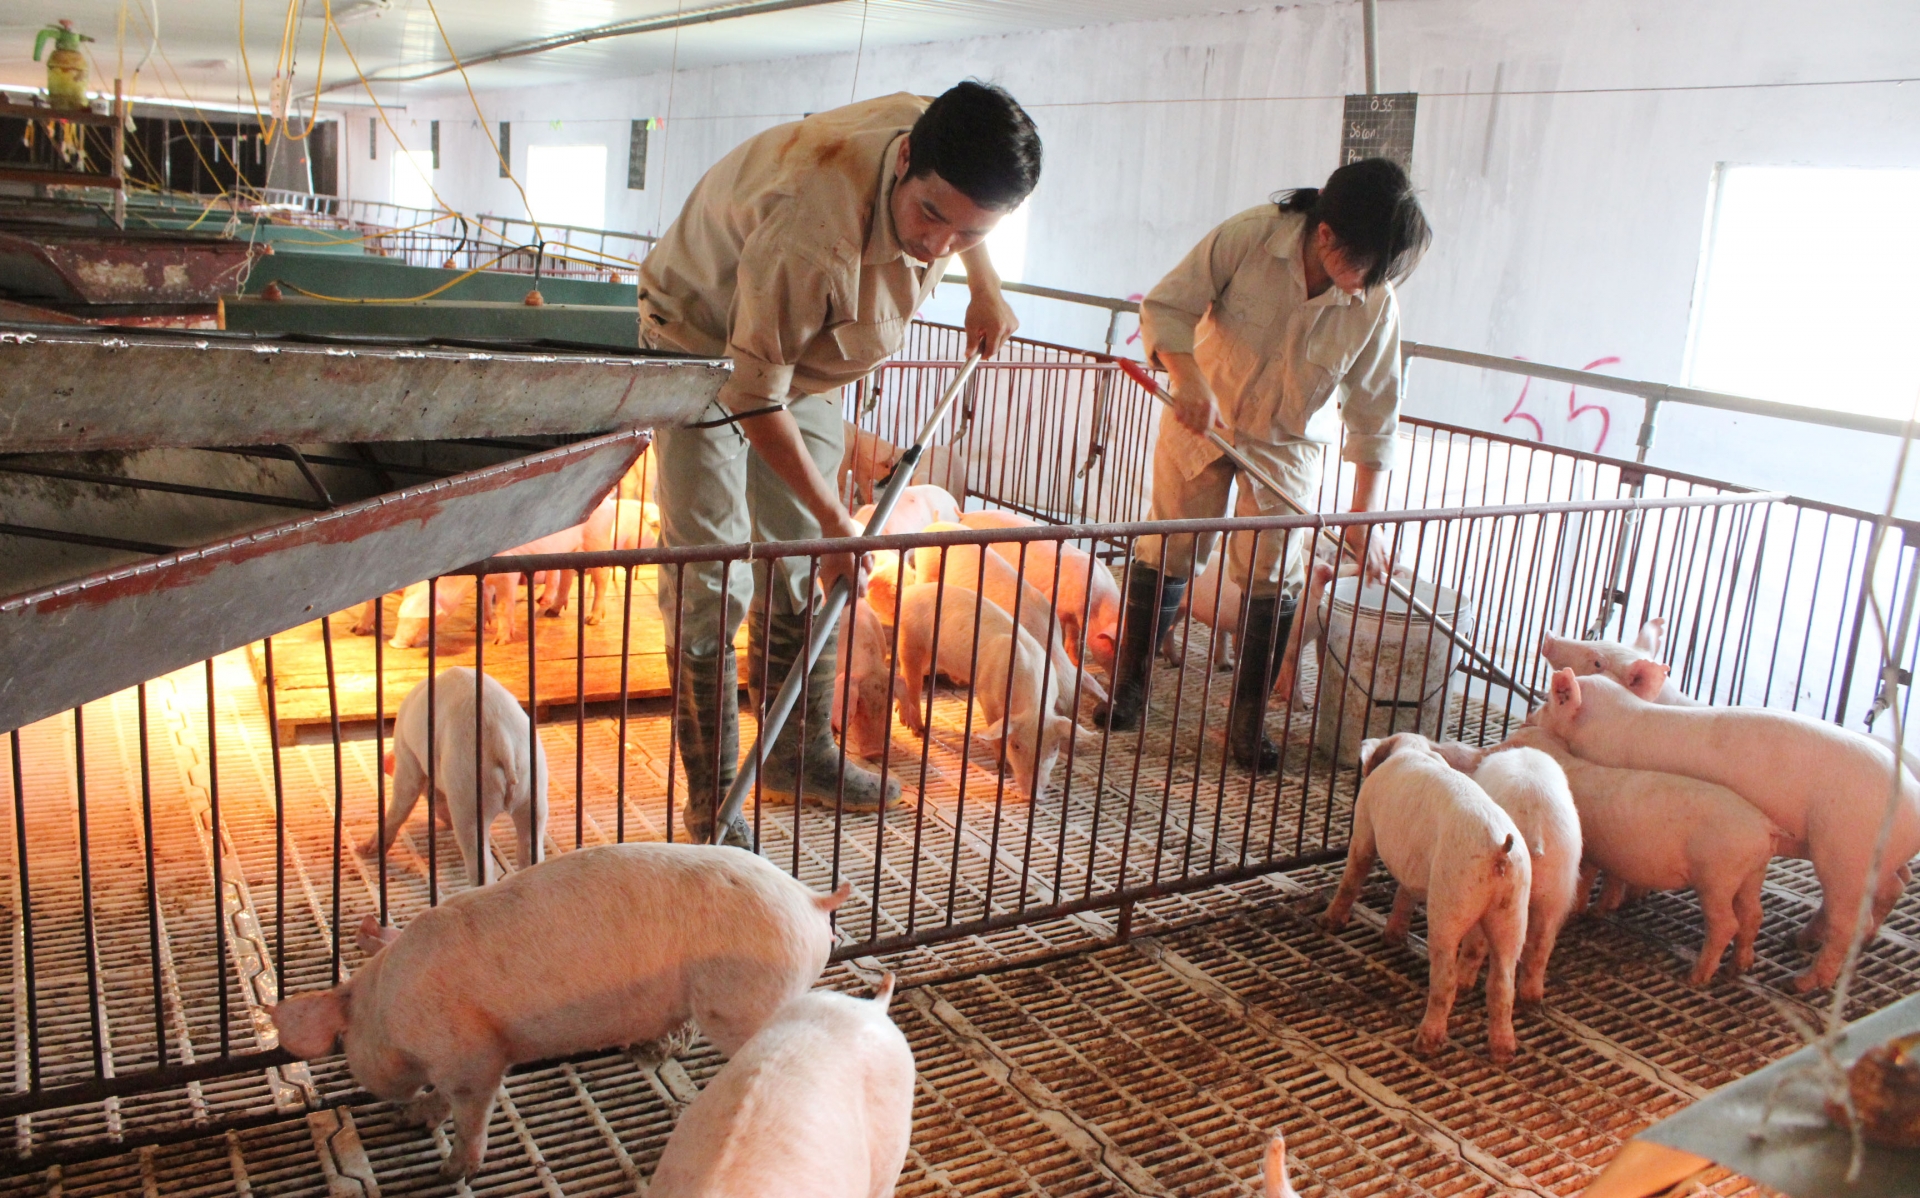 Sẽ tiêu huỷ ngay các sản phẩm từ lợn vận chuyển bất hợp pháp?